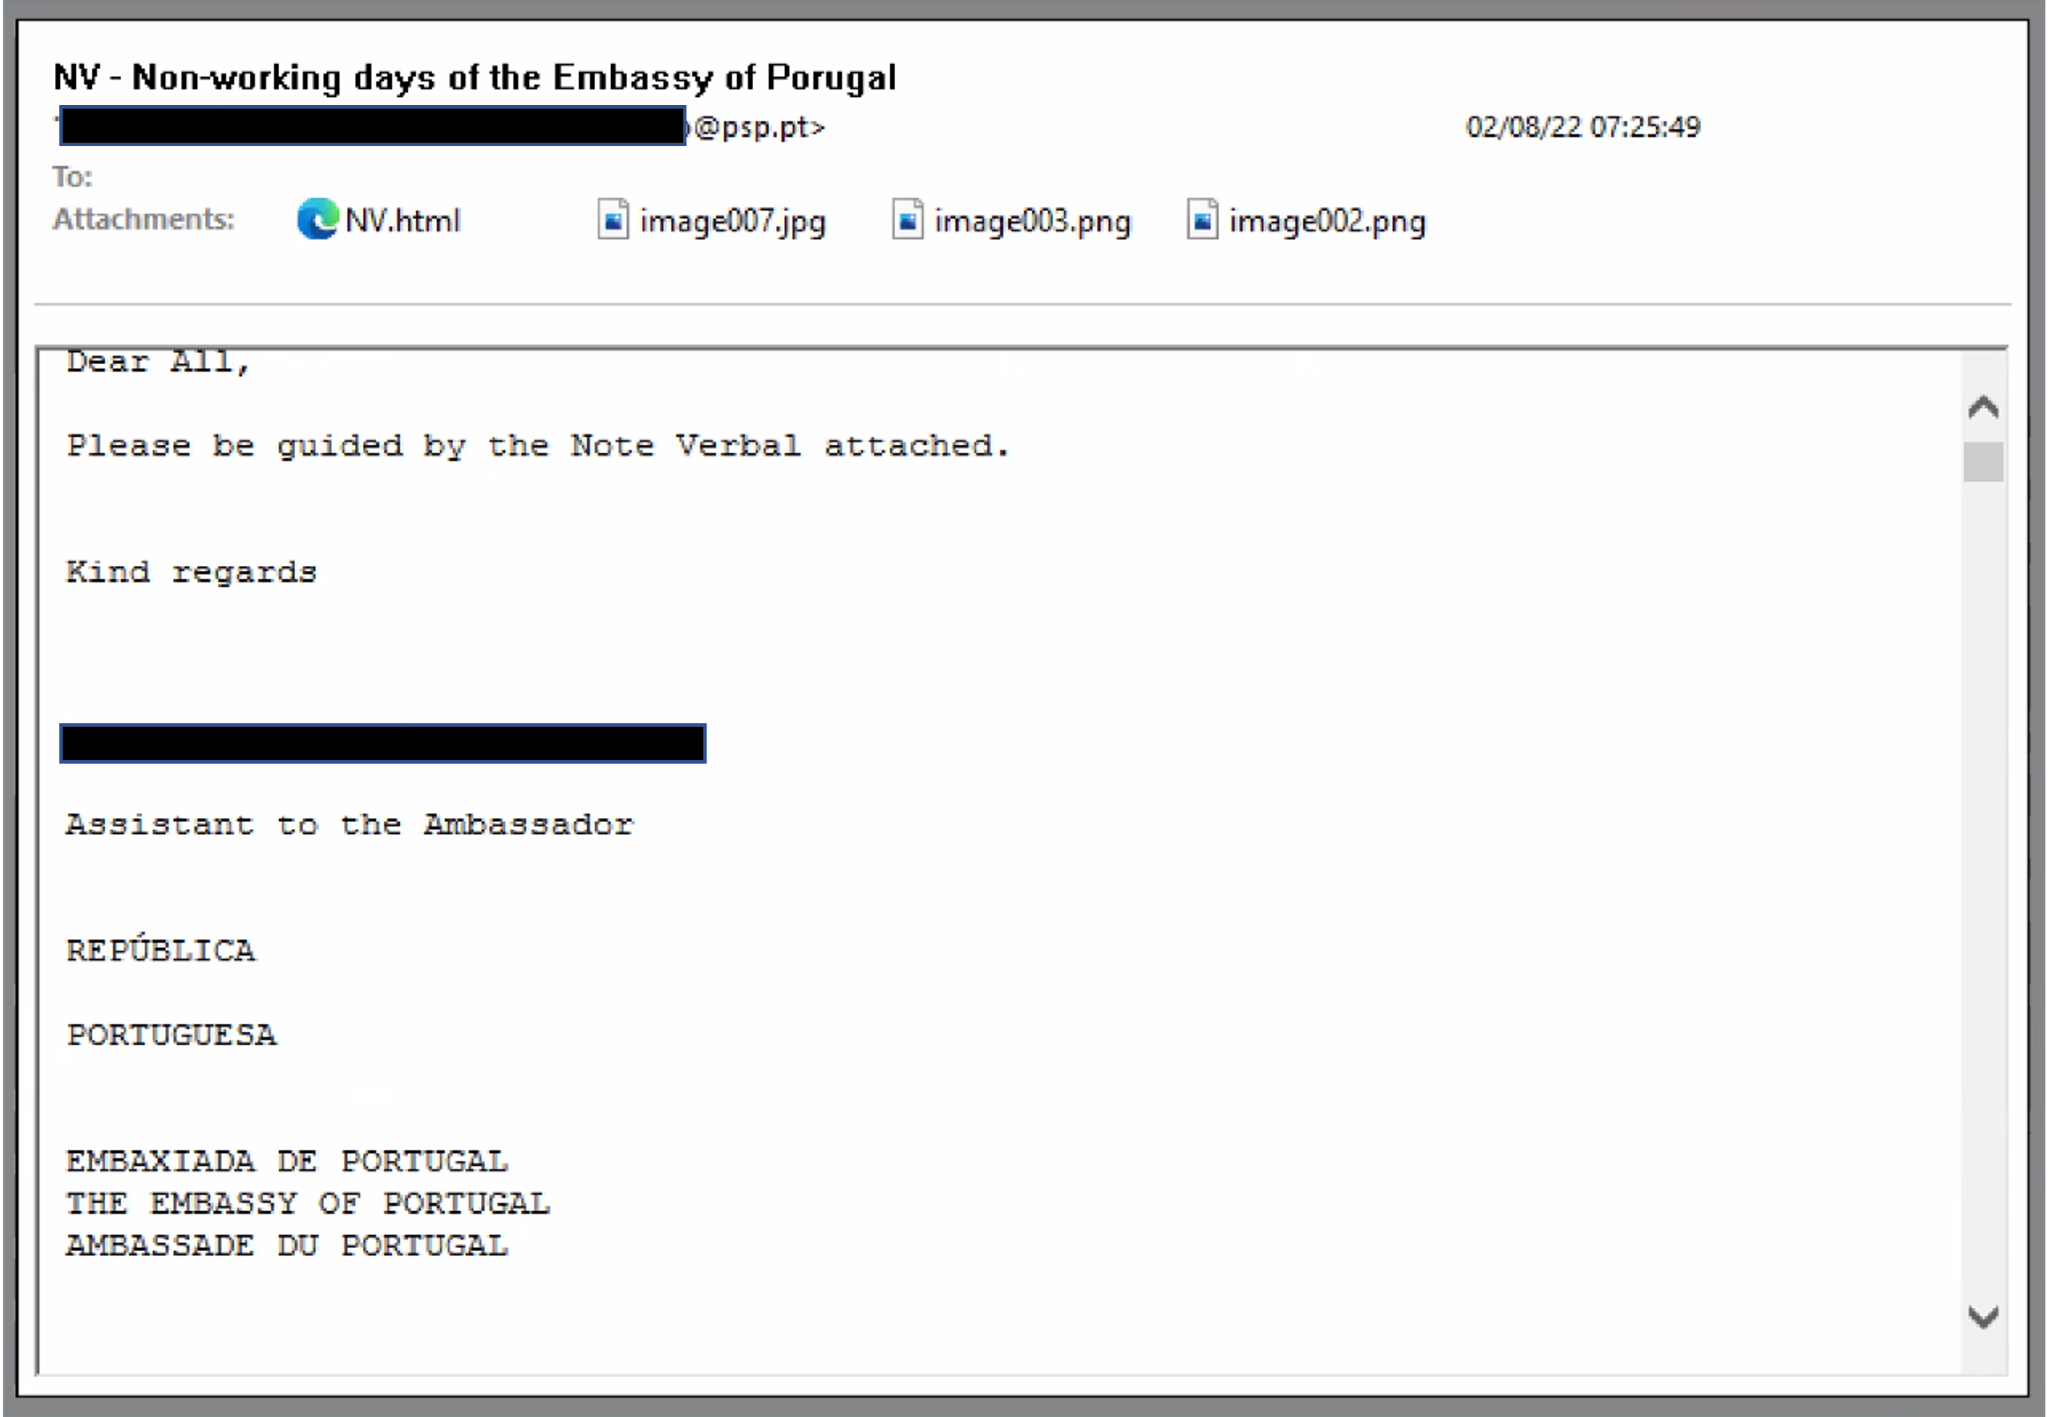 オーストリア外務省への電子メールおとりにはこのように記載されています。 